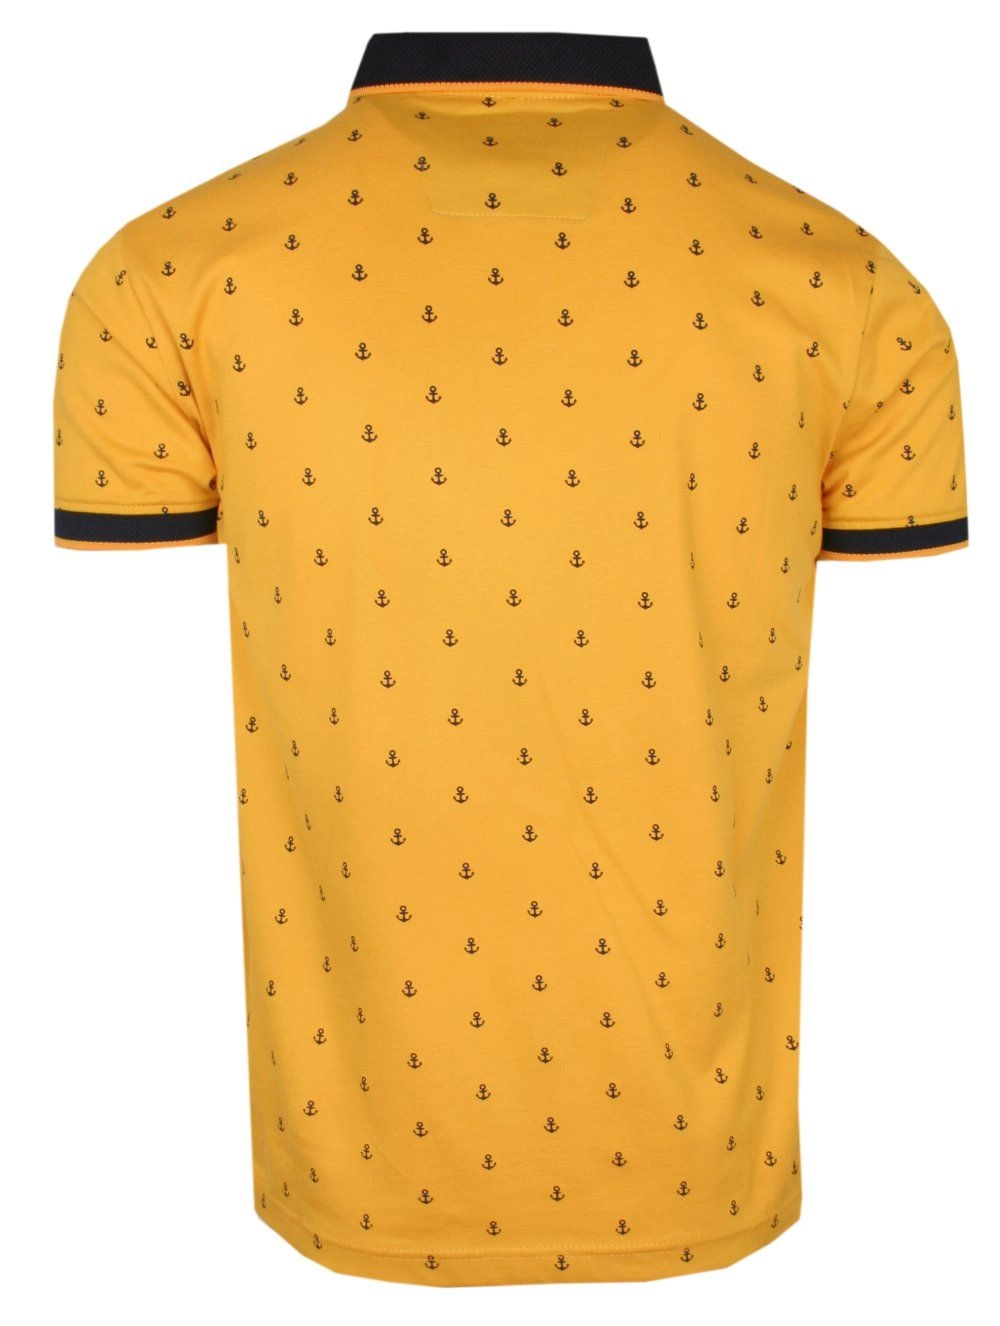 Koszulka POLO, Żółta w Kotwice, Krótki Rękaw, Męska, z Nadrukiem